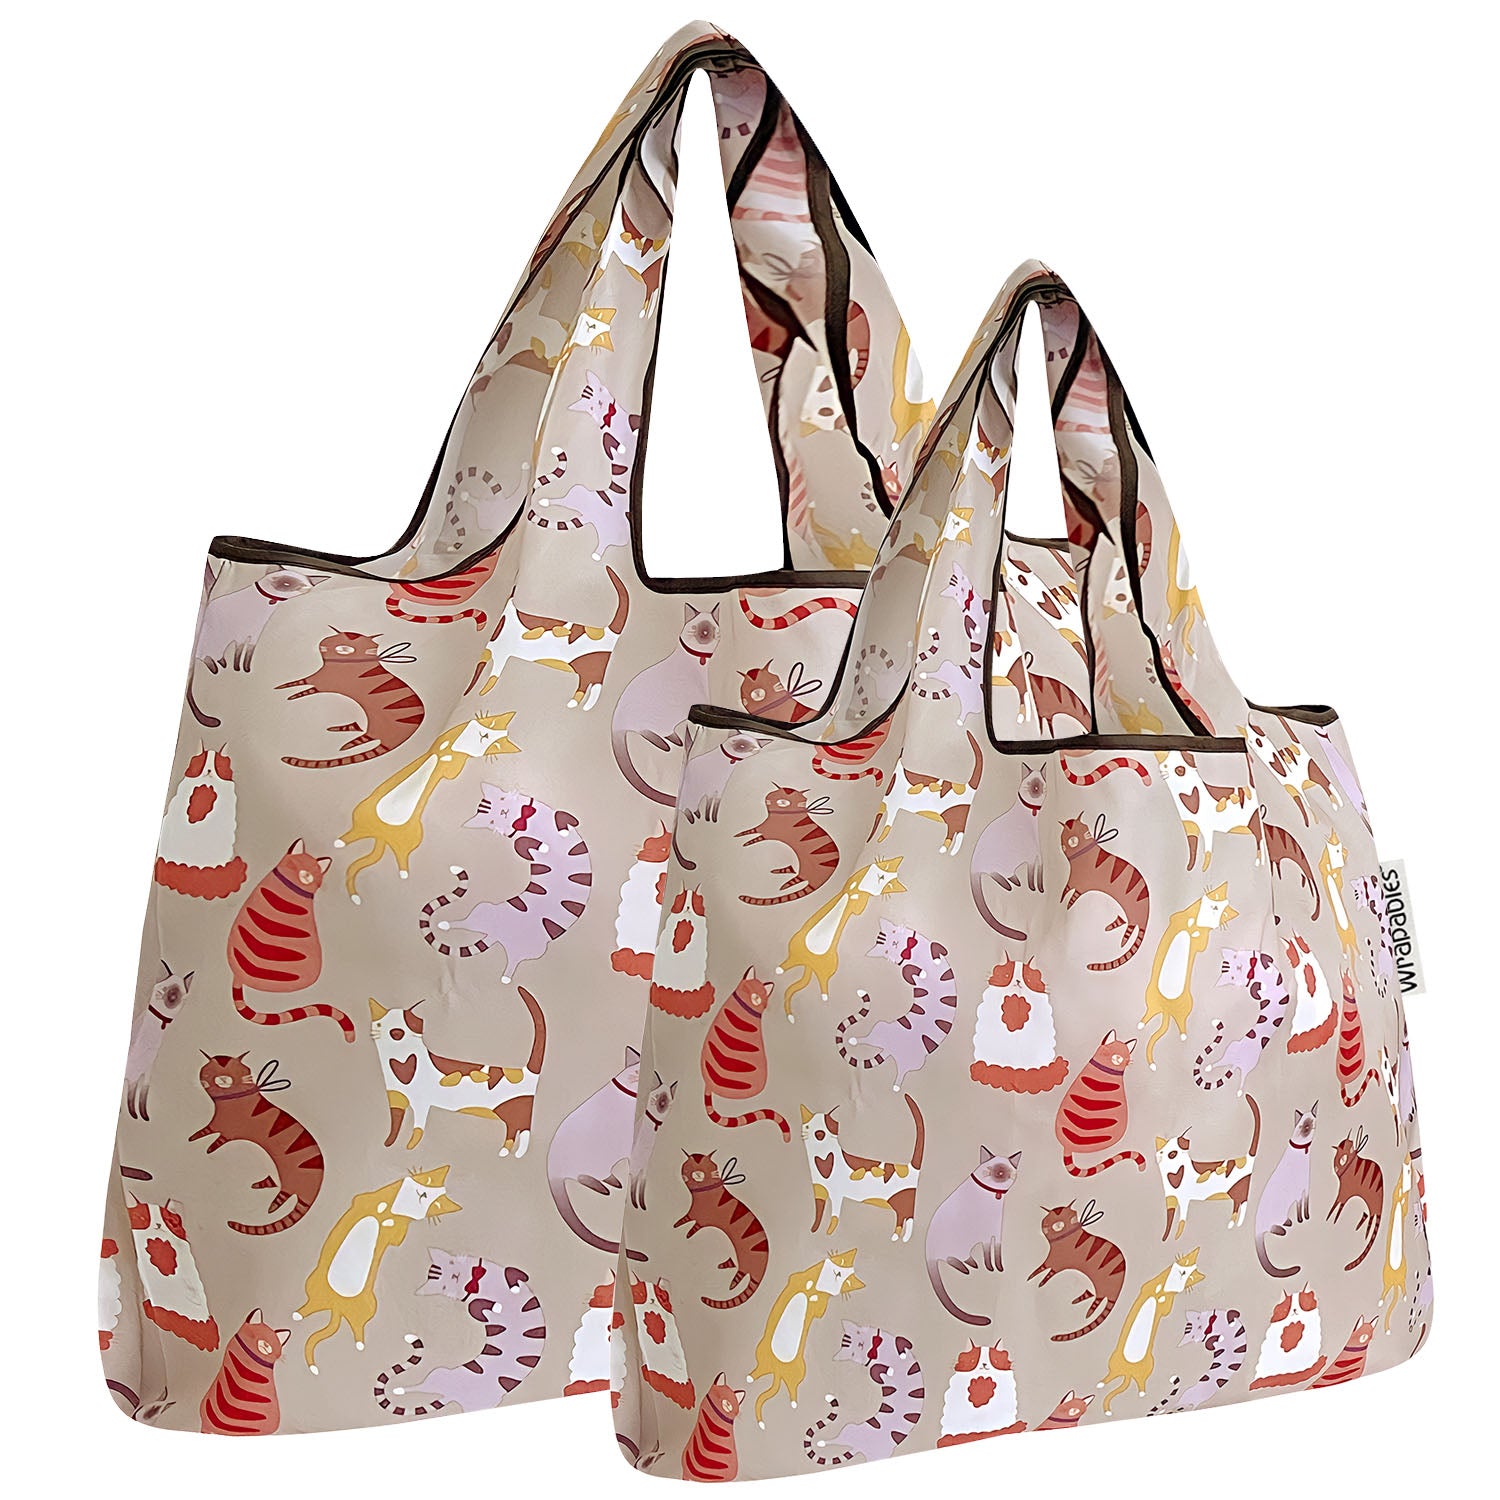 EastVita Tote Bag Shopping handbag Reusable Grocery Bags Foldable